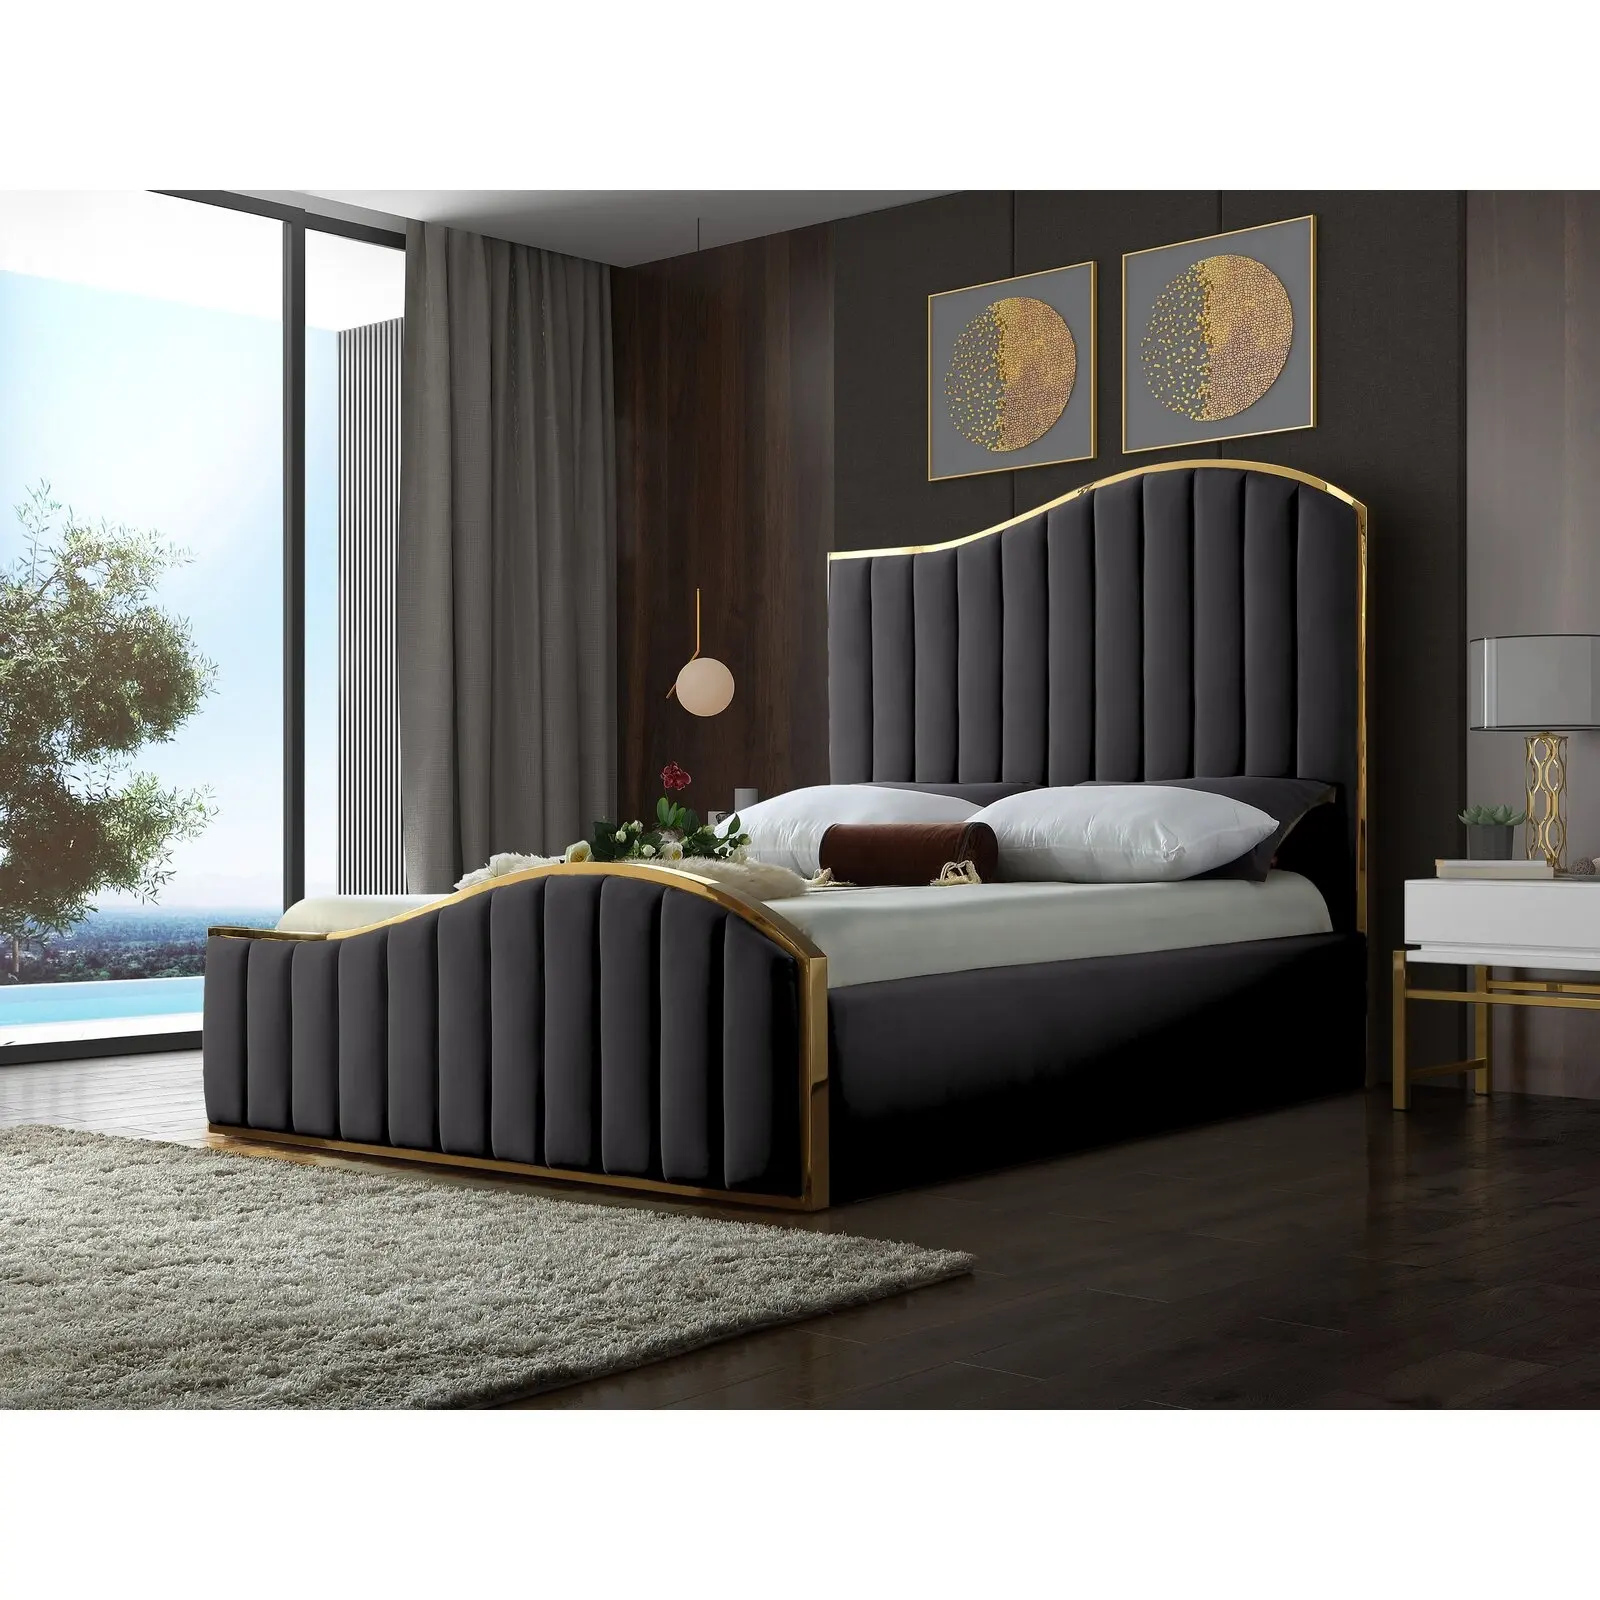 upholstered bed antique luxury modern king size wood storage beds frame bed room furnitures set